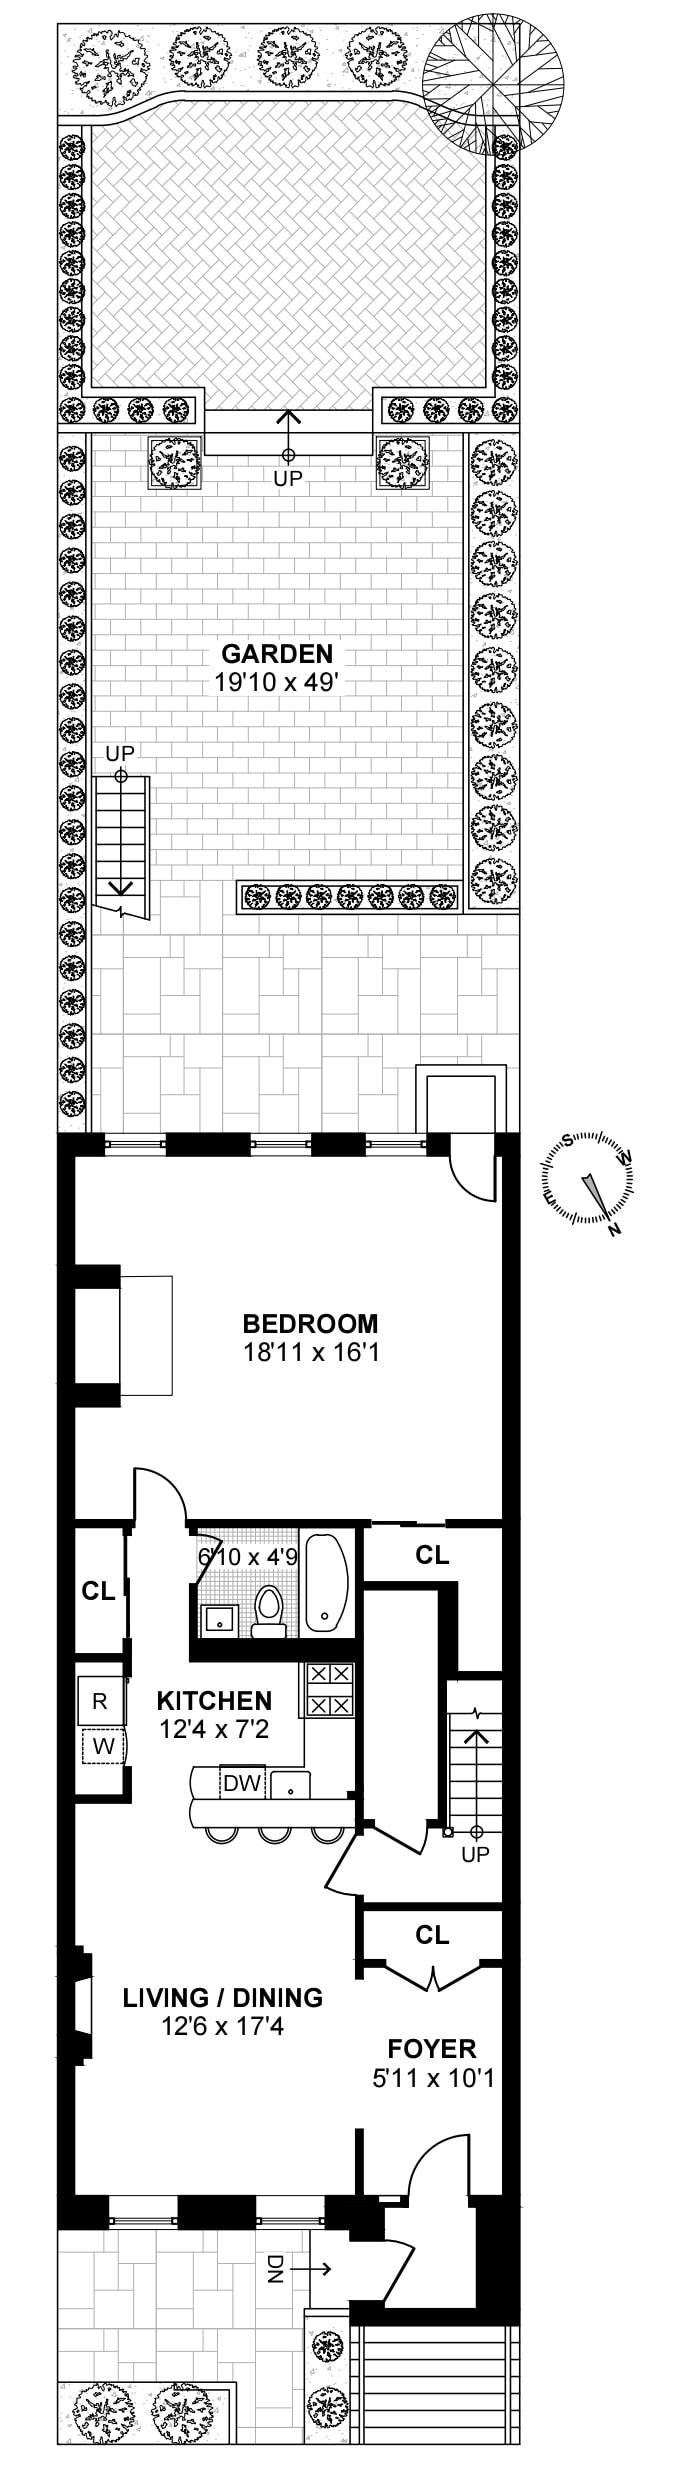 Floorplan for 428 West 44th Street, GARDEN